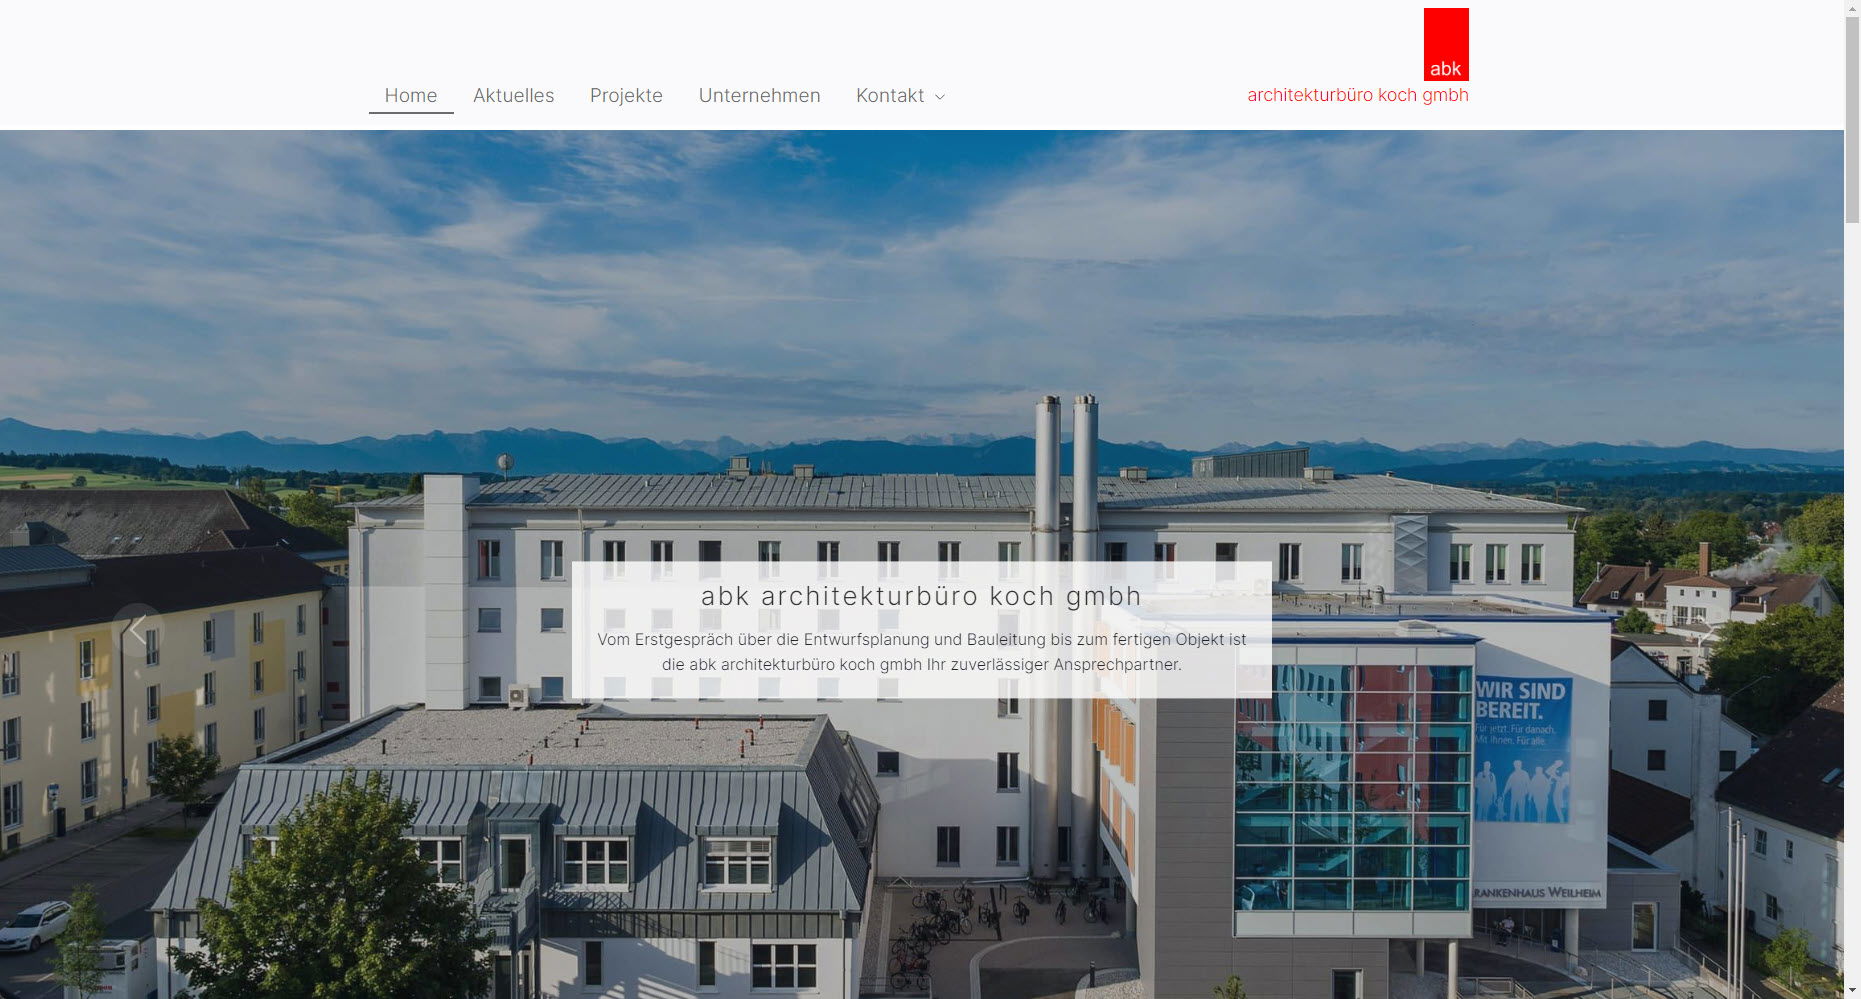 abk architekturbüro koch GmbH